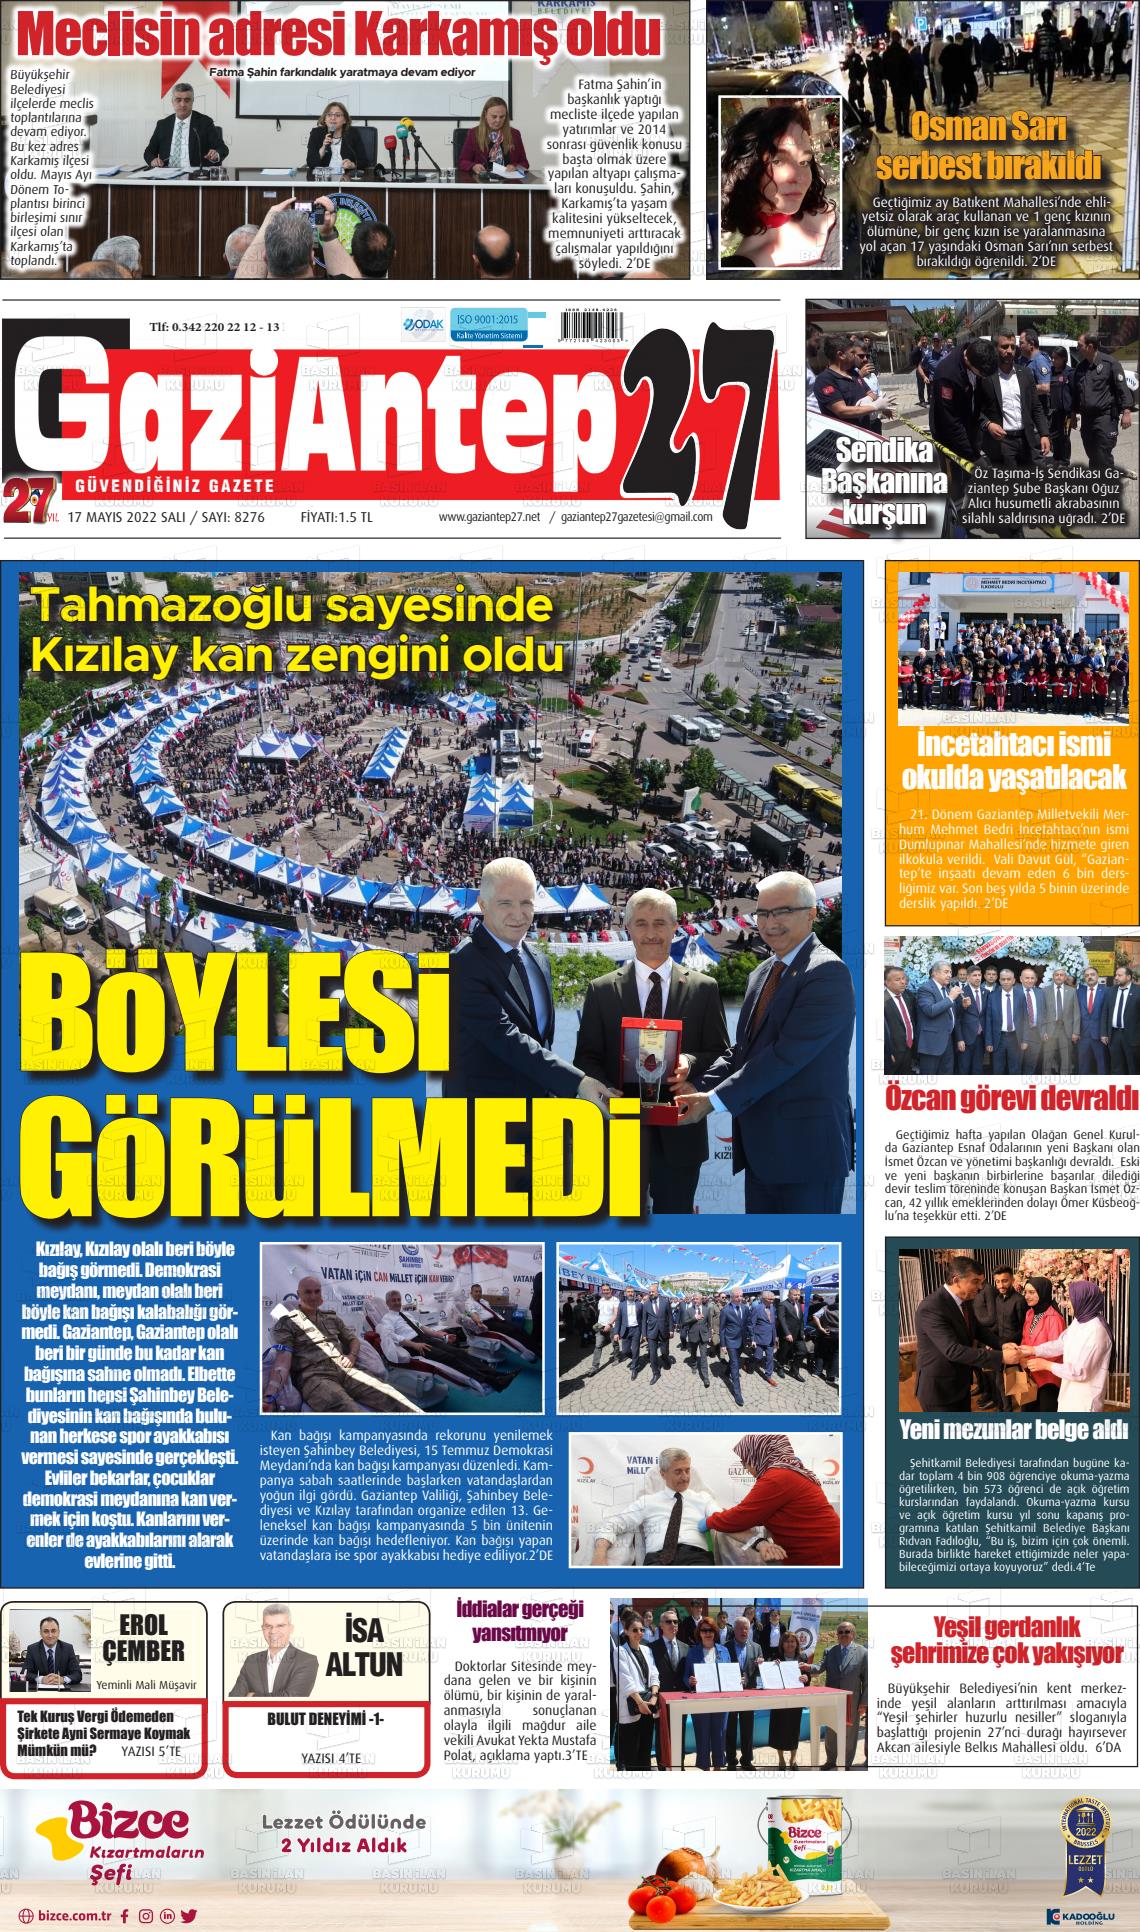 17 Mayıs 2022 Gaziantep 27 Gazete Manşeti